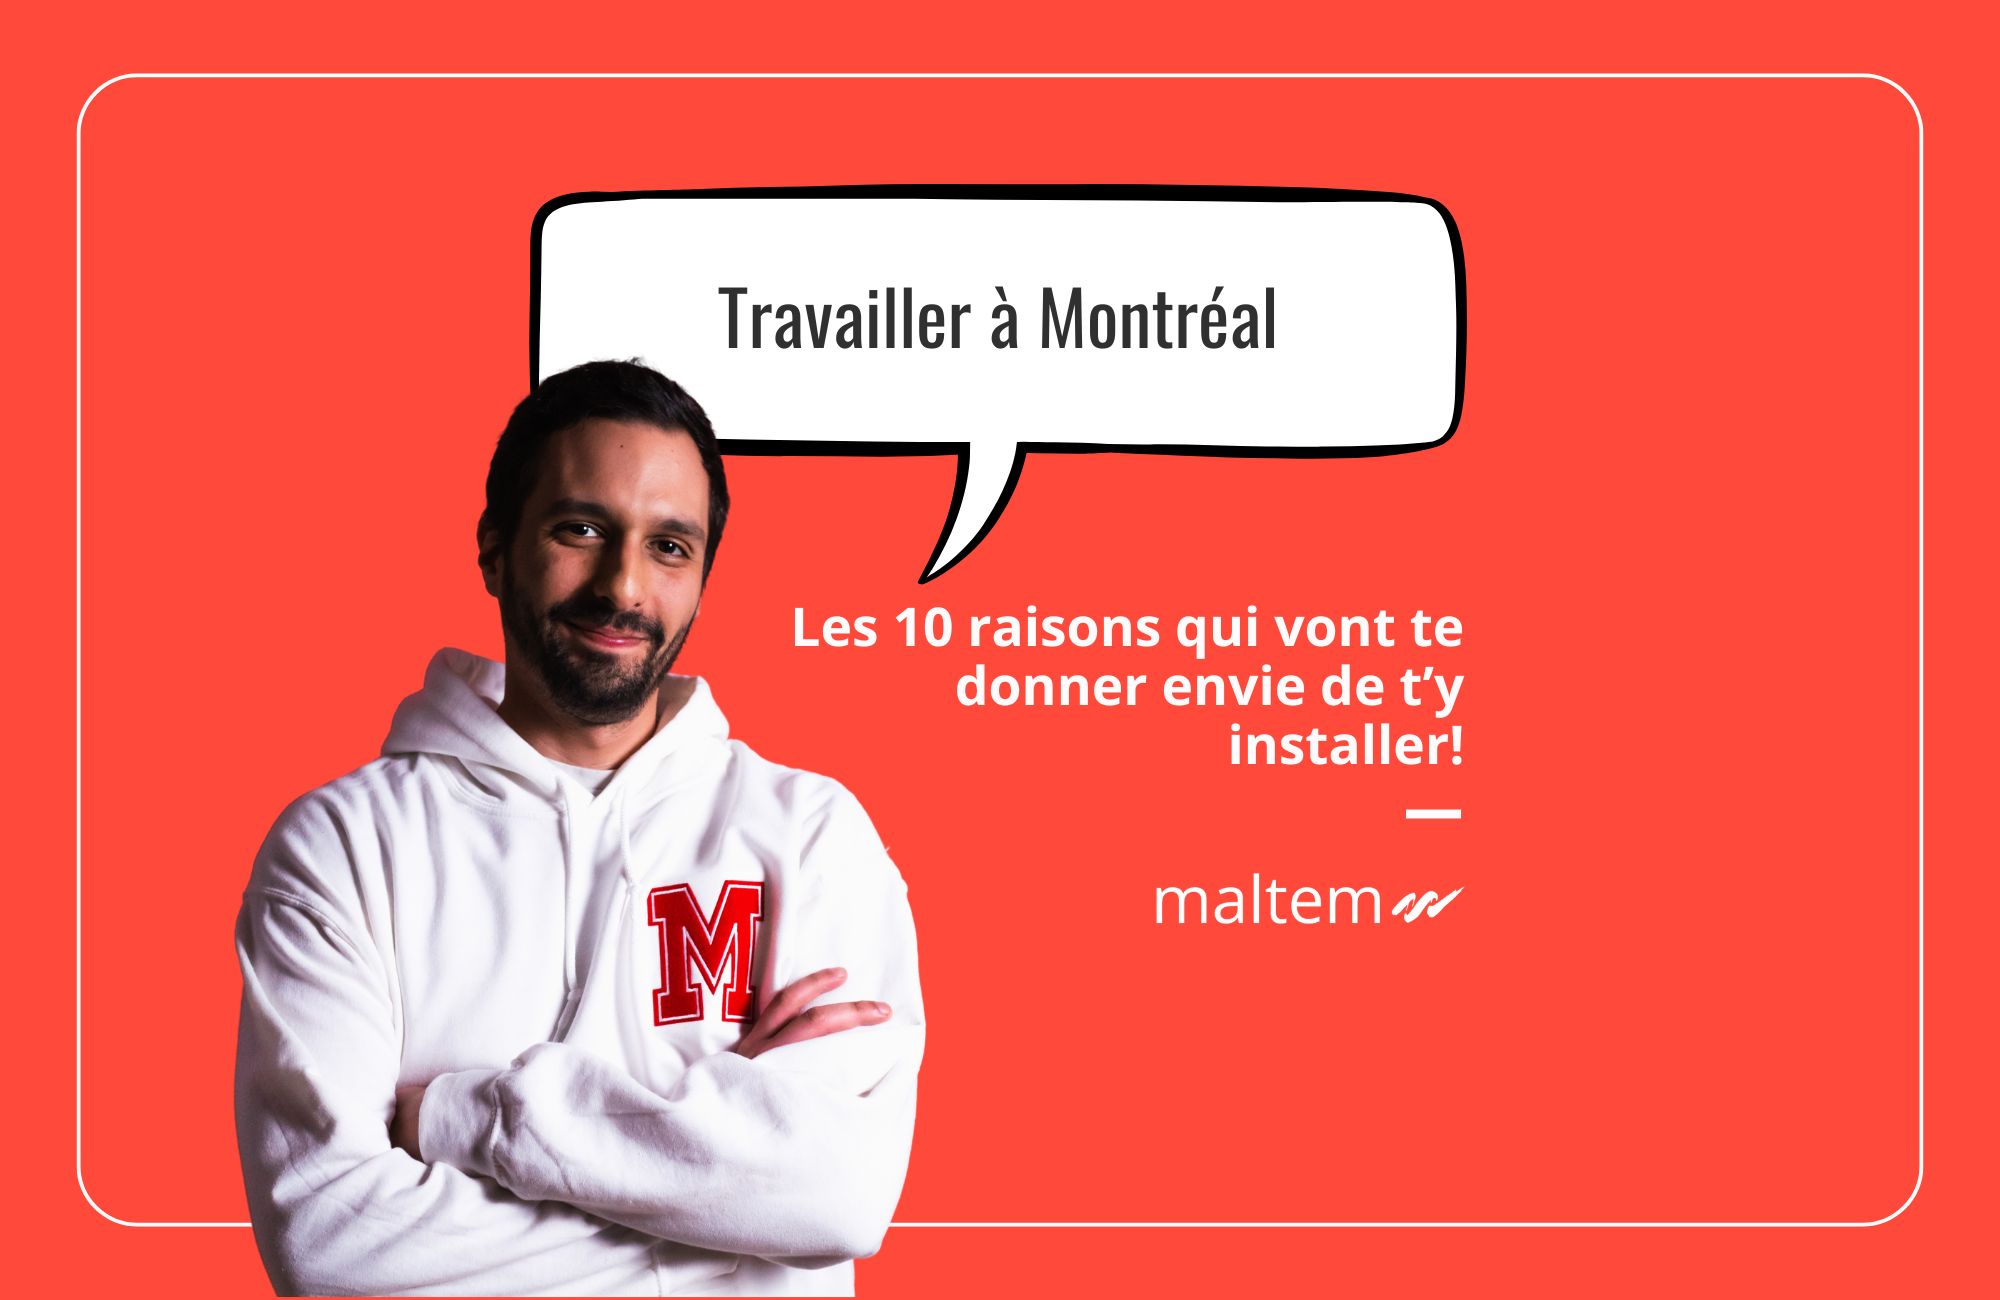 Travailler à Montréal: les 10 raisons qui vont te donner envie de t'y installer!